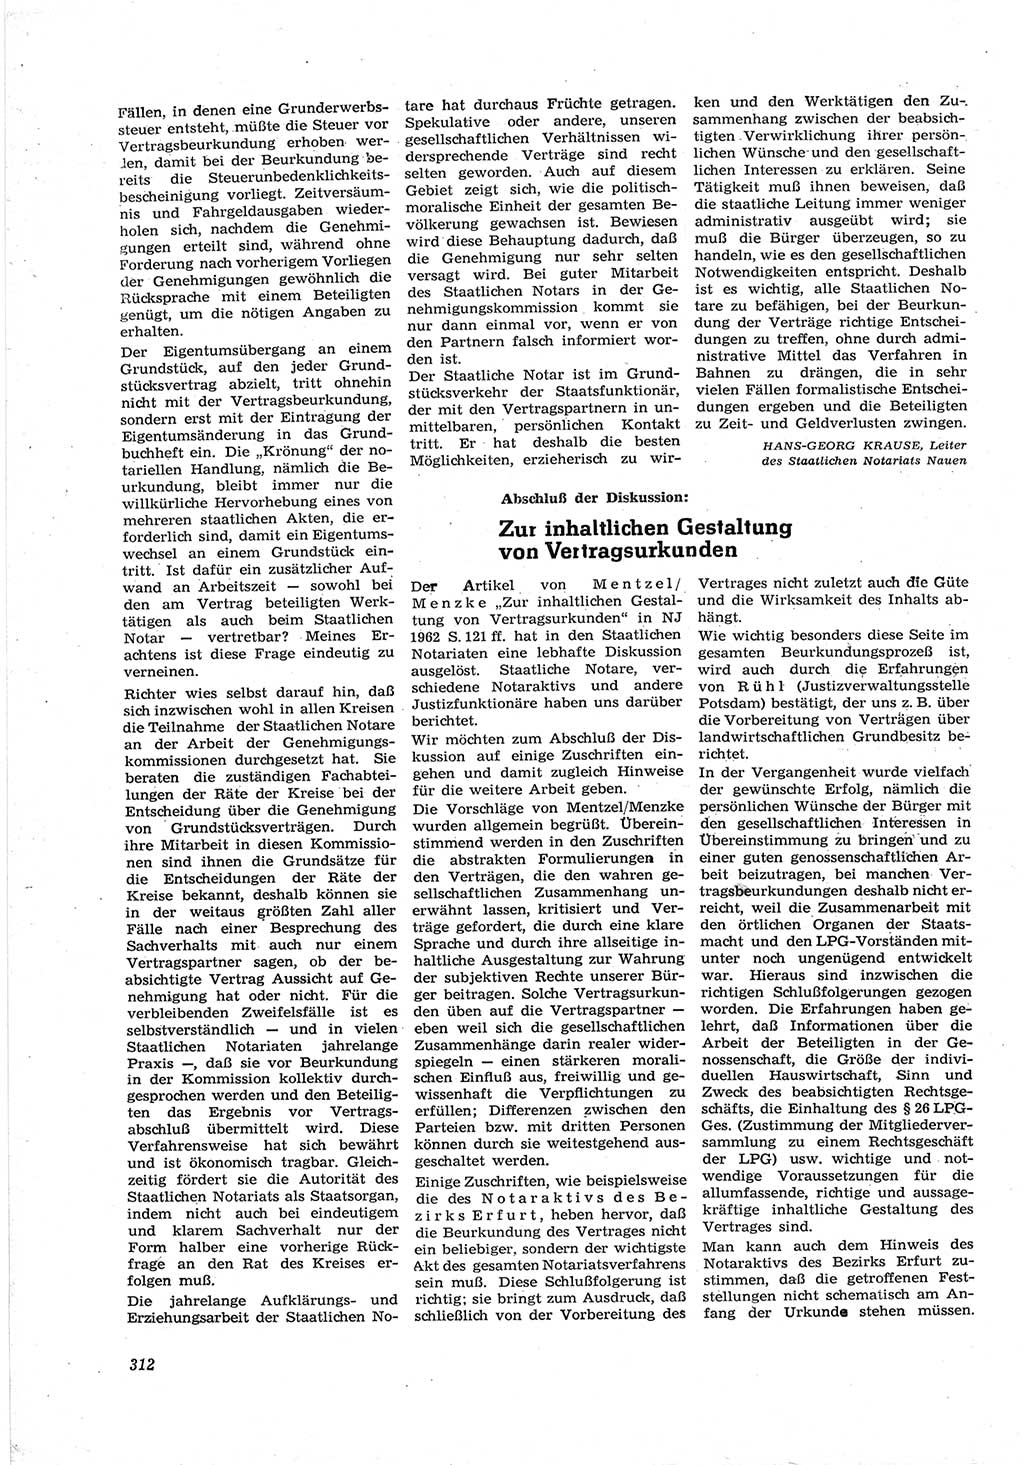 Neue Justiz (NJ), Zeitschrift für Recht und Rechtswissenschaft [Deutsche Demokratische Republik (DDR)], 17. Jahrgang 1963, Seite 312 (NJ DDR 1963, S. 312)